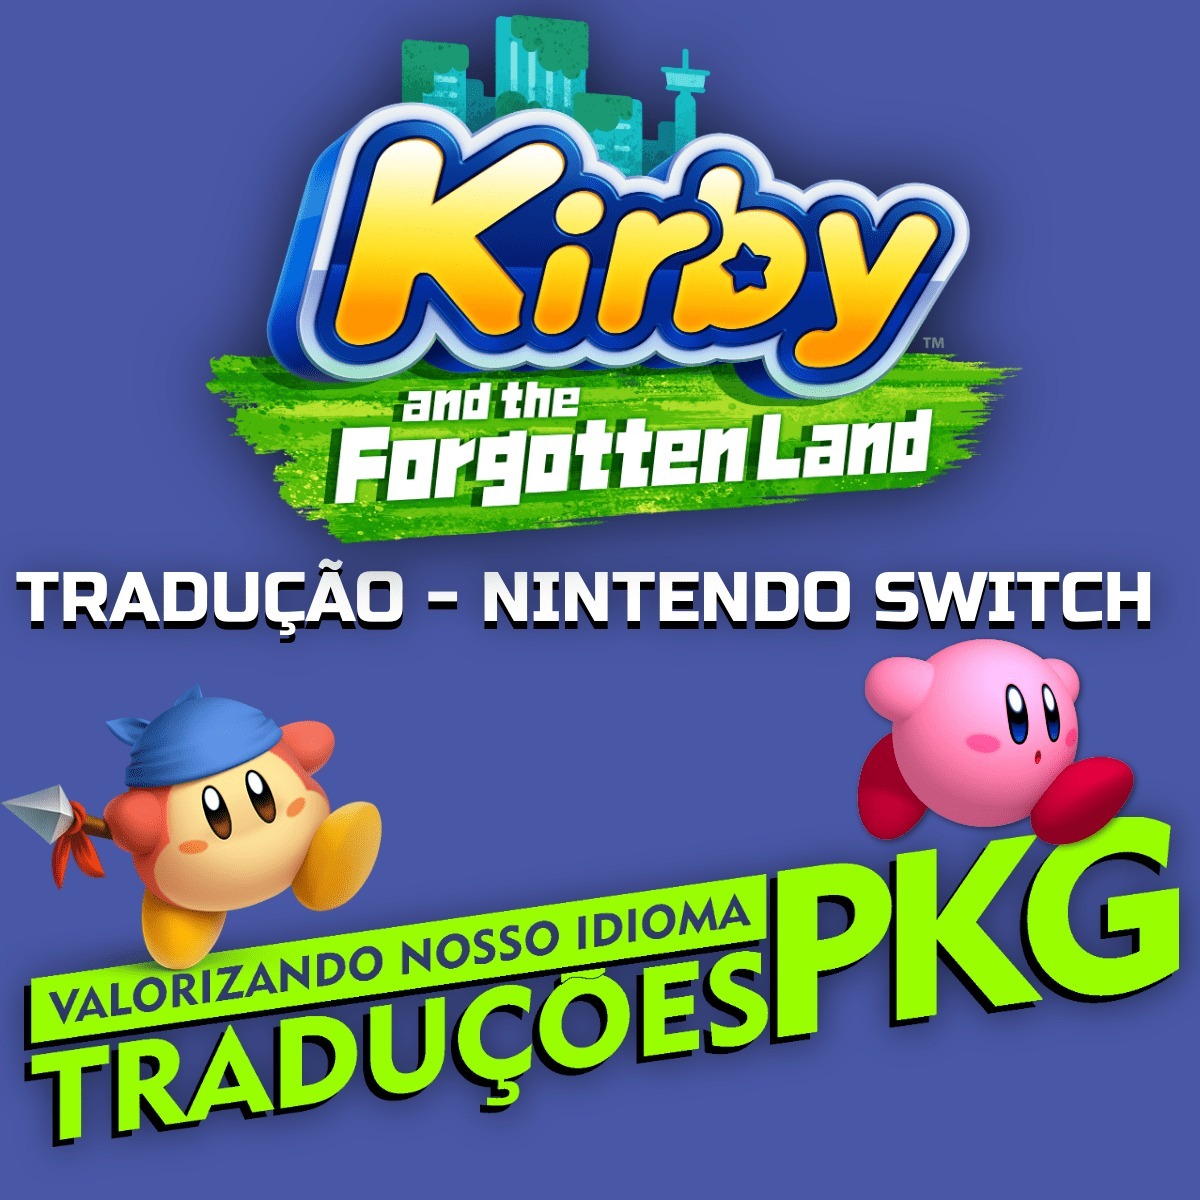 kirby and the Forgotten Land - TRADUÇÃO para Português Pt-BR